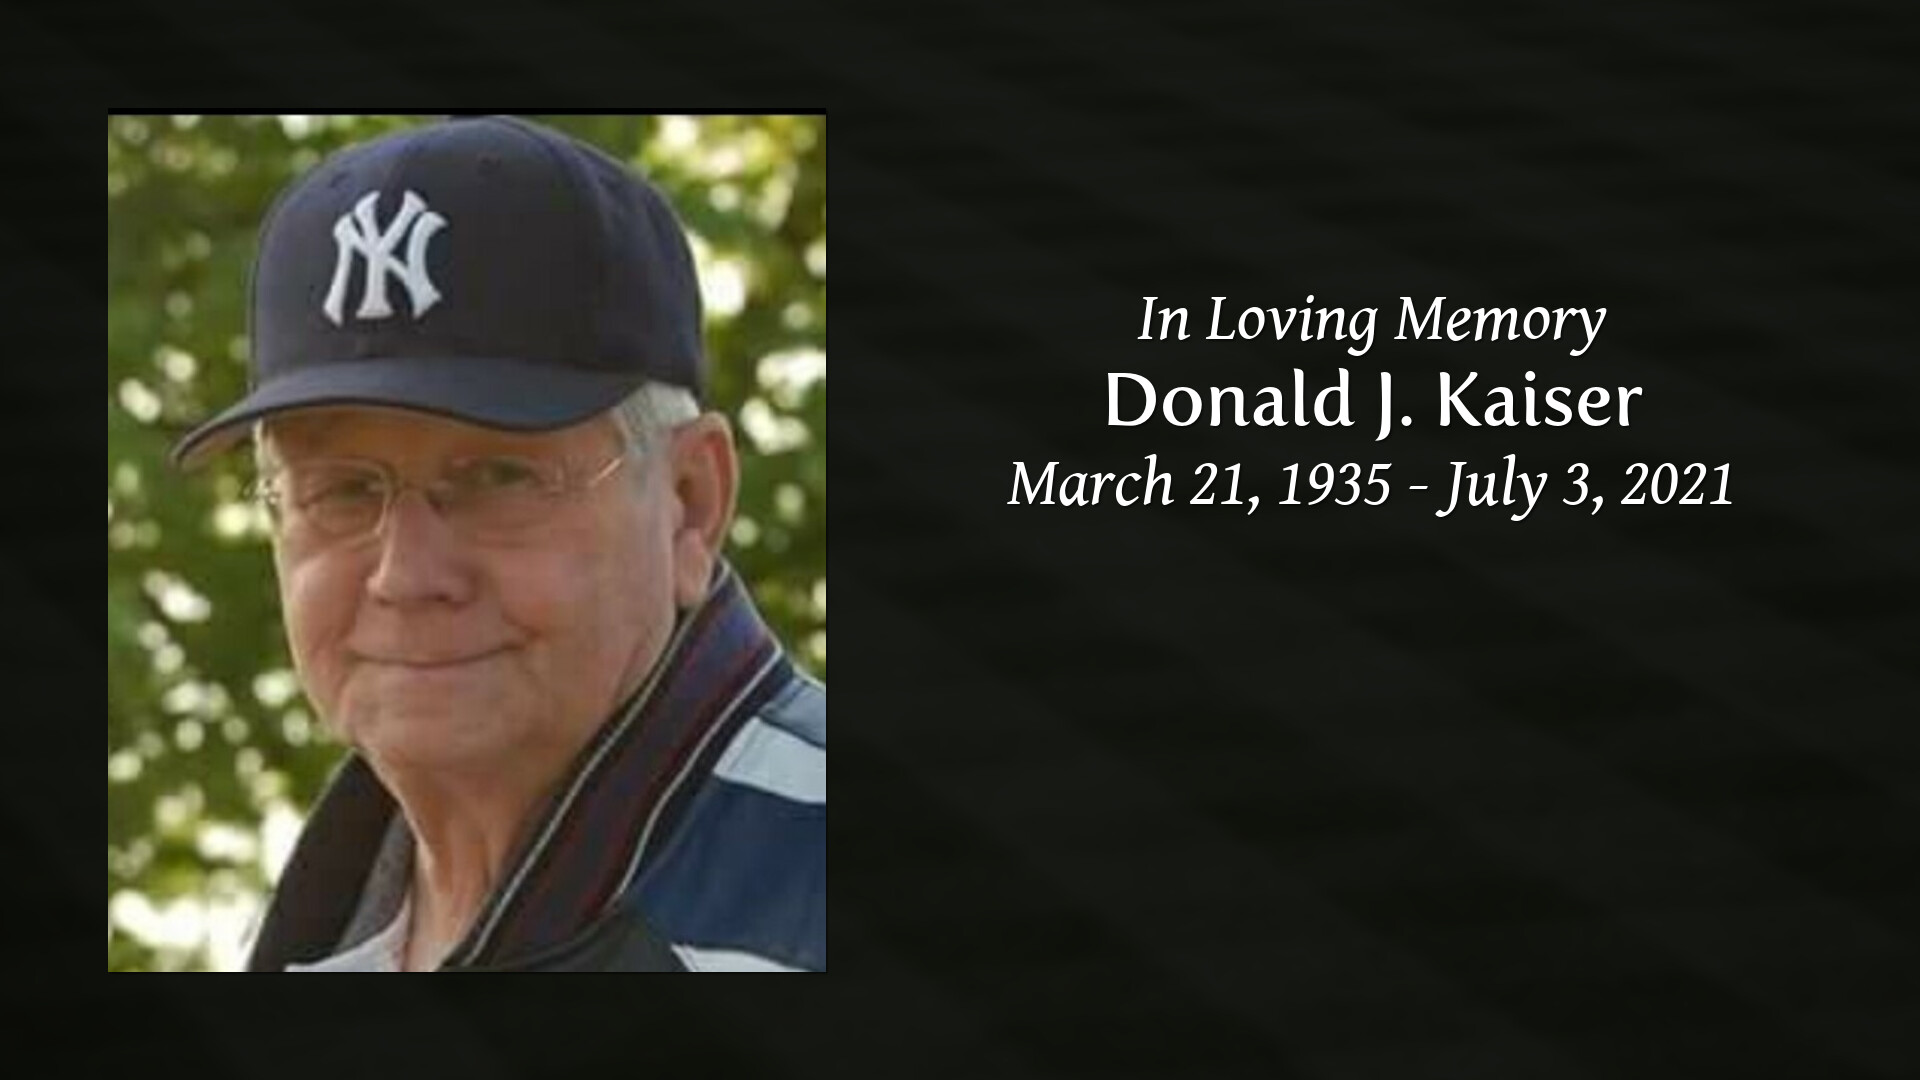 Donald J. Kaiser Tribute Video